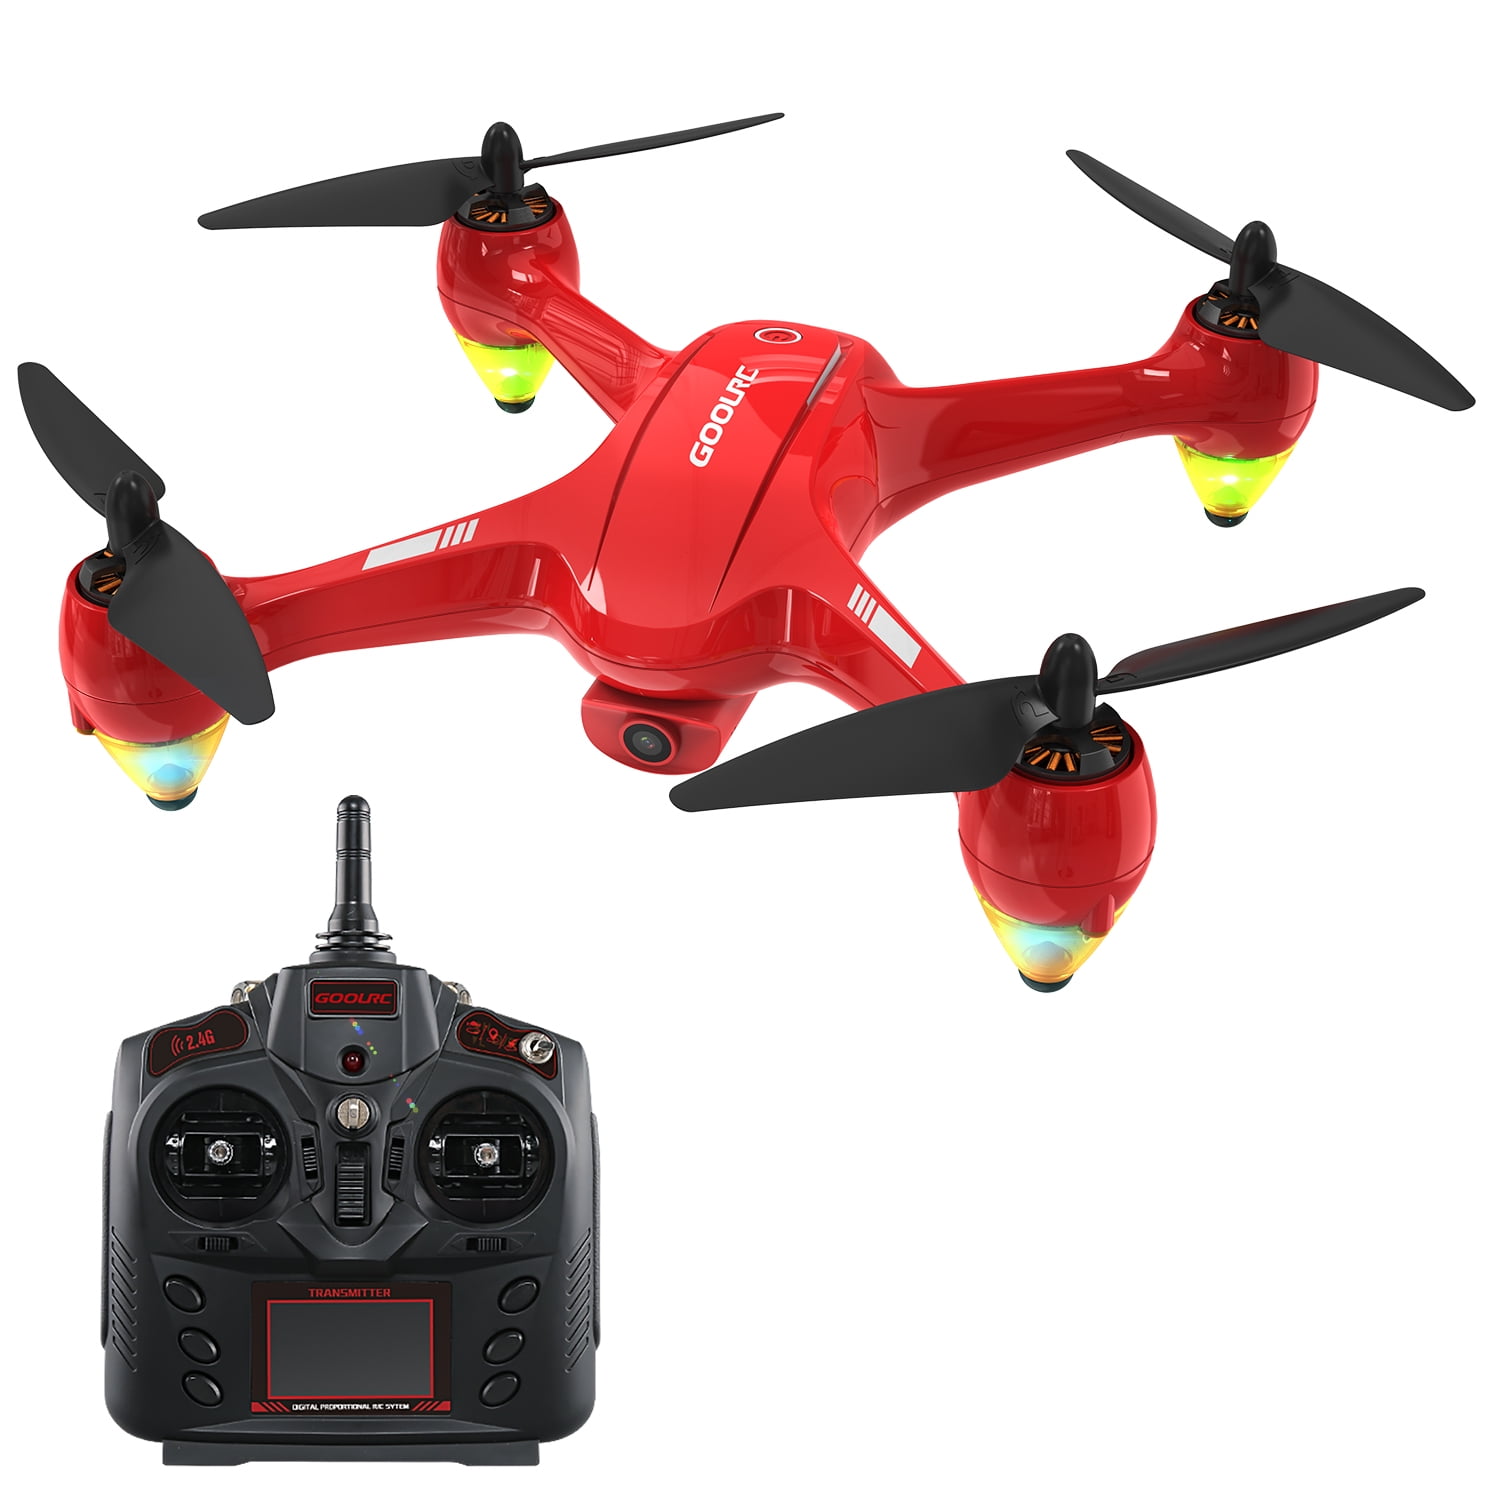 attitude hold 2.4 ghz 1080p hd camera wifi fpv rc drone quadcopter